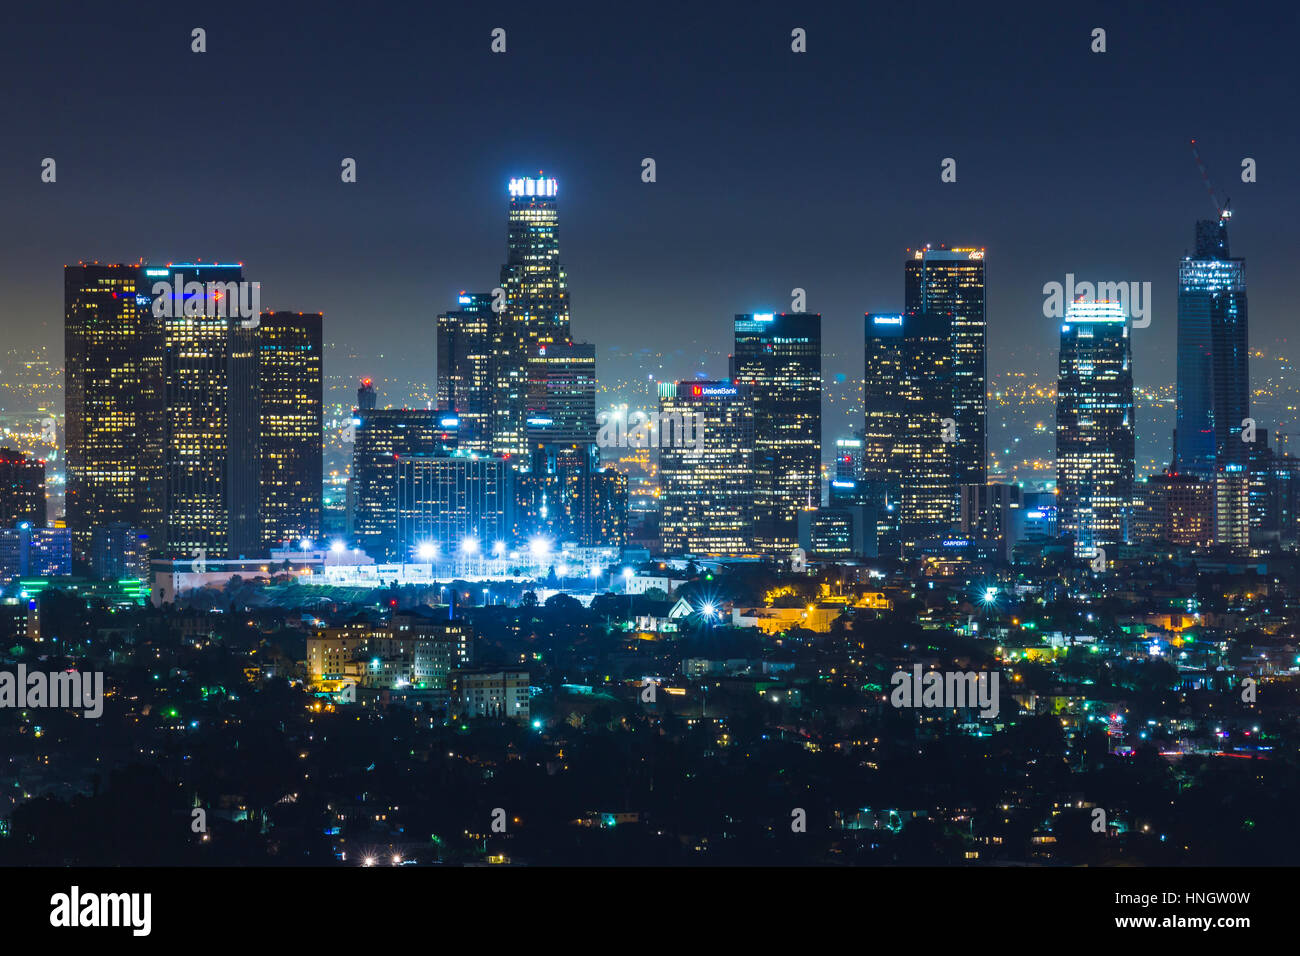 Los Angeles, Kalifornien, USA. 2016/07/22: malerische Aussicht auf Wolkenkratzer in der Nacht in Los Angeles, Kalifornien, USA. Stockfoto